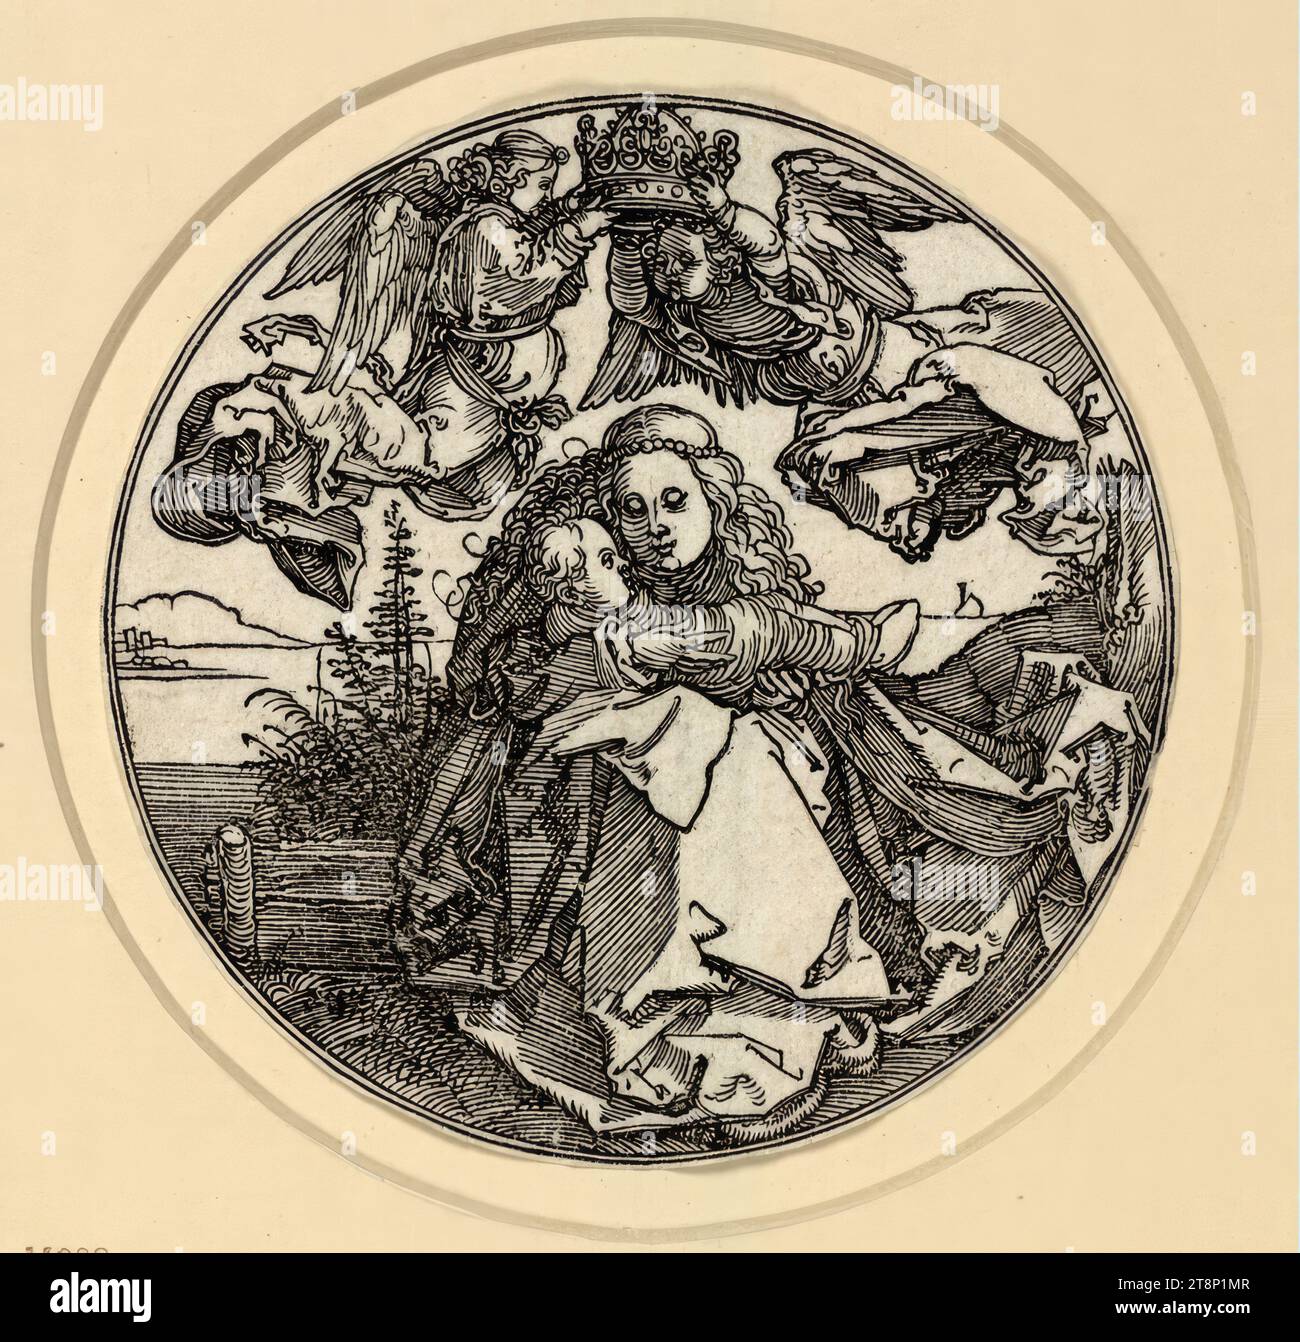 Maria im rund (sans le paysage rocheux), la vie de Marie, Albrecht Dürer (Nuremberg 1471 - 1528 Nuremberg), vers 1514, estampe, gravure sur bois ; feuille coupée ronde, feuille (ronde) : 9 × 9 cm Banque D'Images